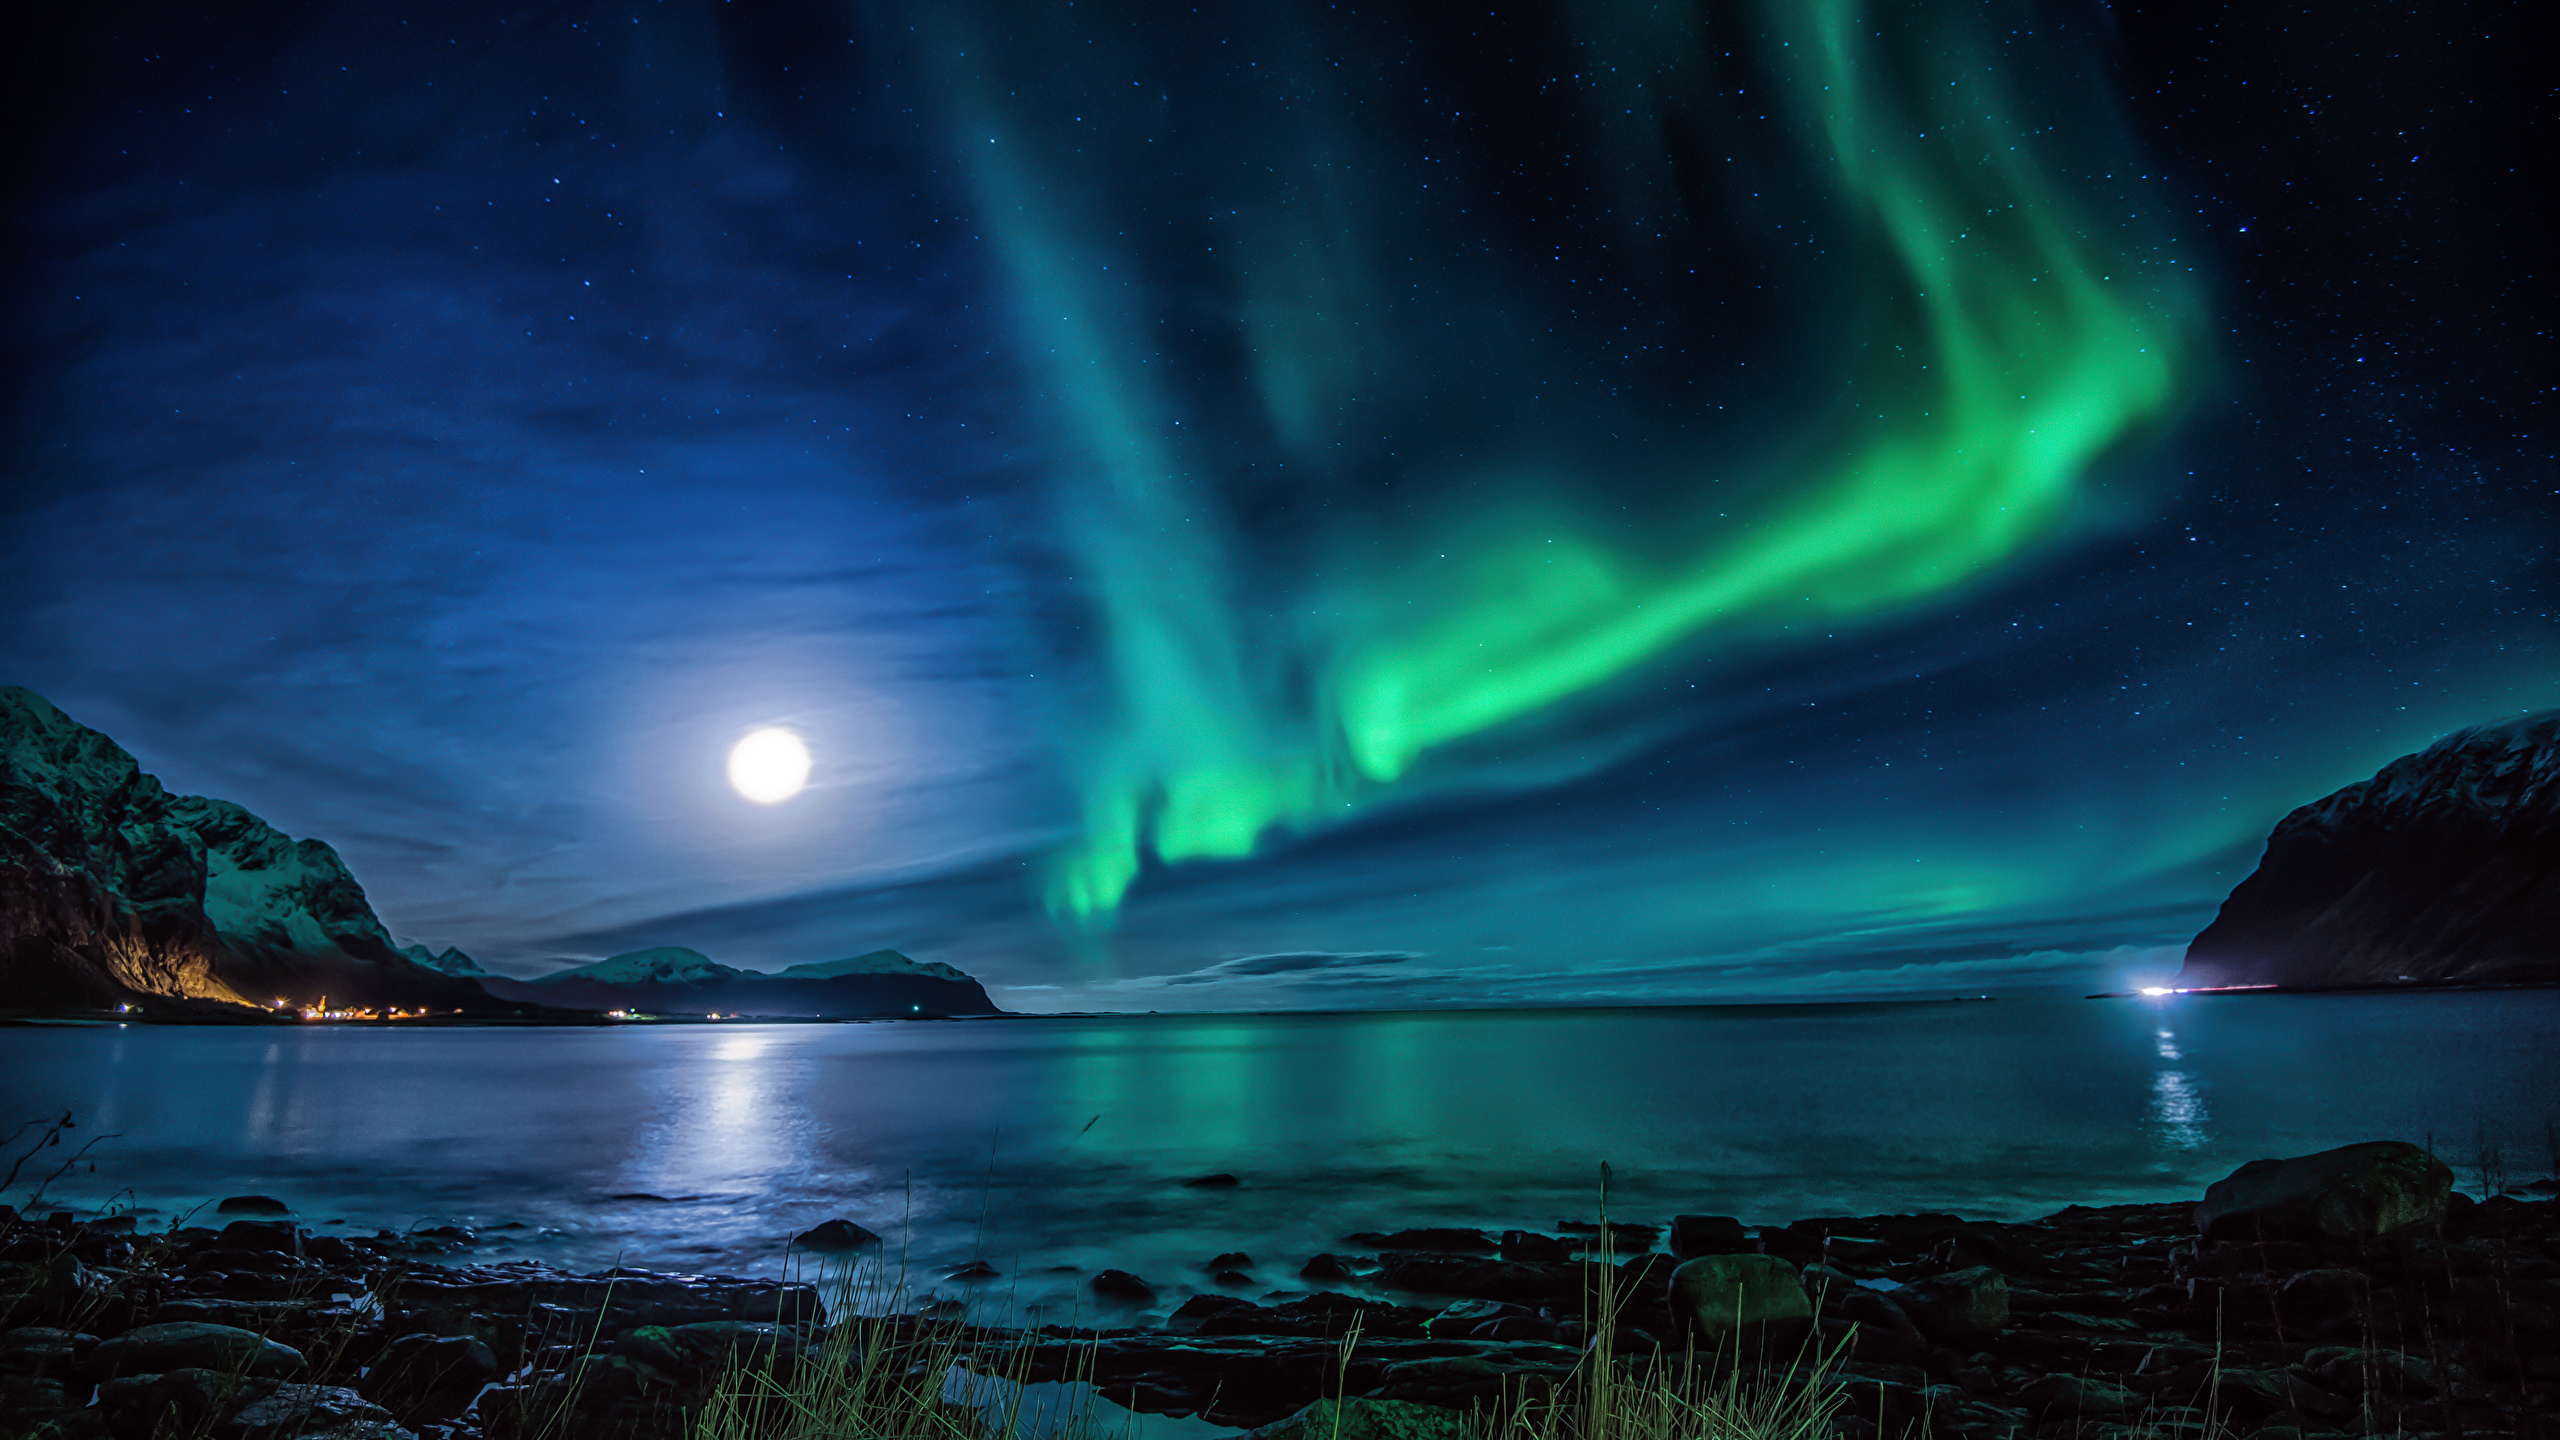 壁紙 2560x1440 ノルウェー ロフォーテン諸島 川 風景写真 オーロラ 夜 月 自然 ダウンロード 写真